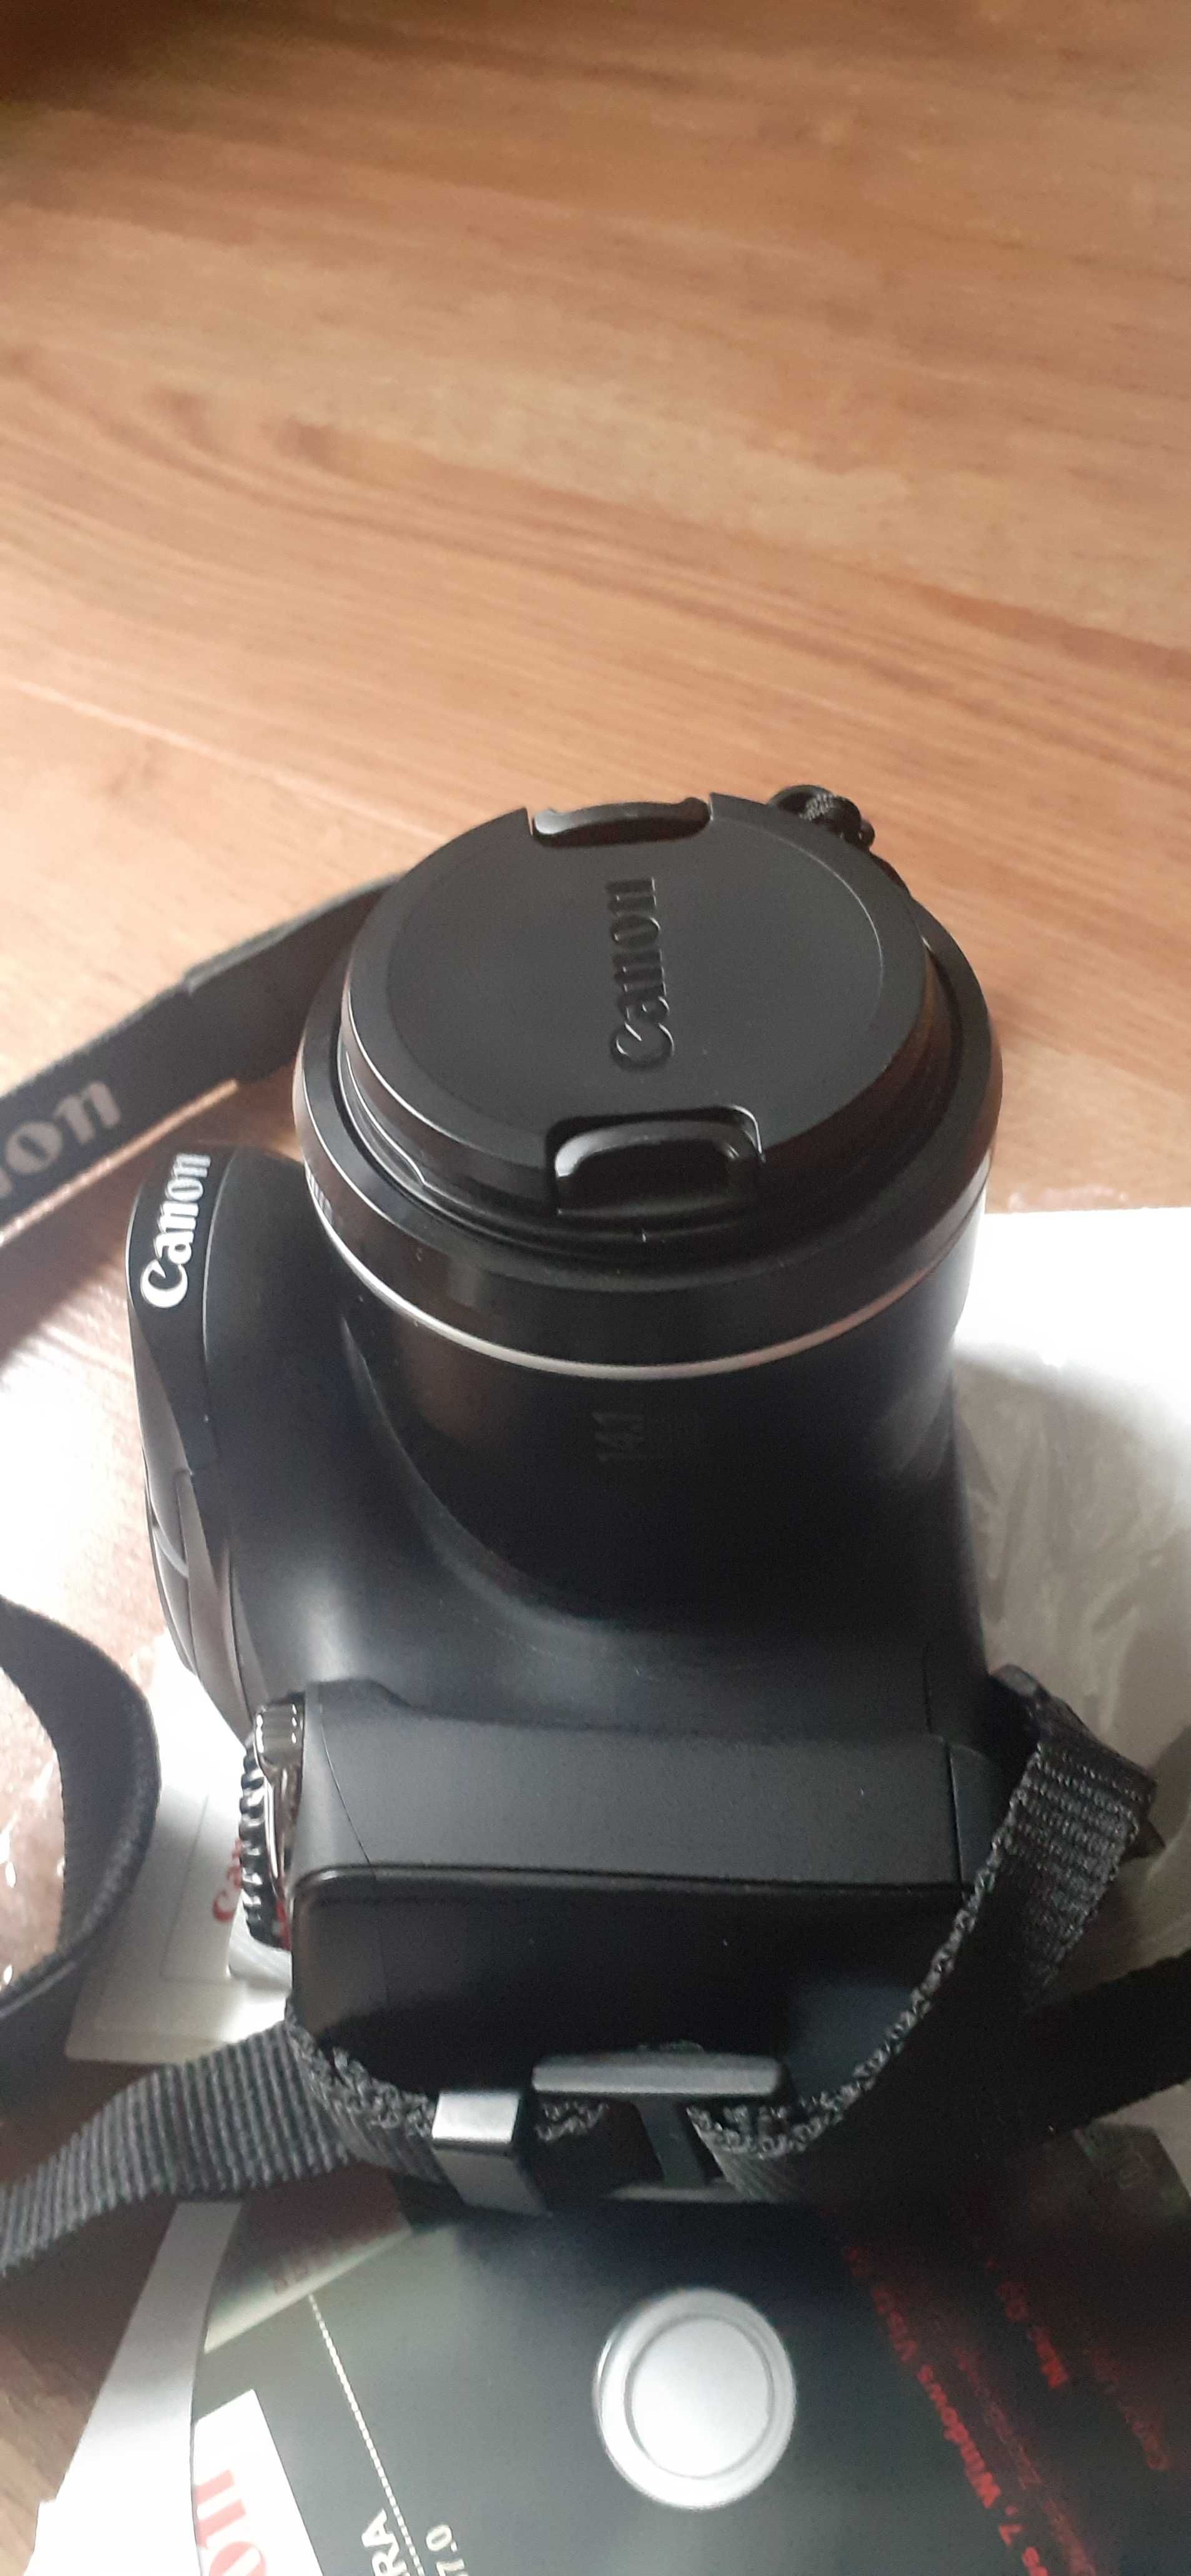 Aparat Canon PowerShot SX30 IS , praktycznie nowy